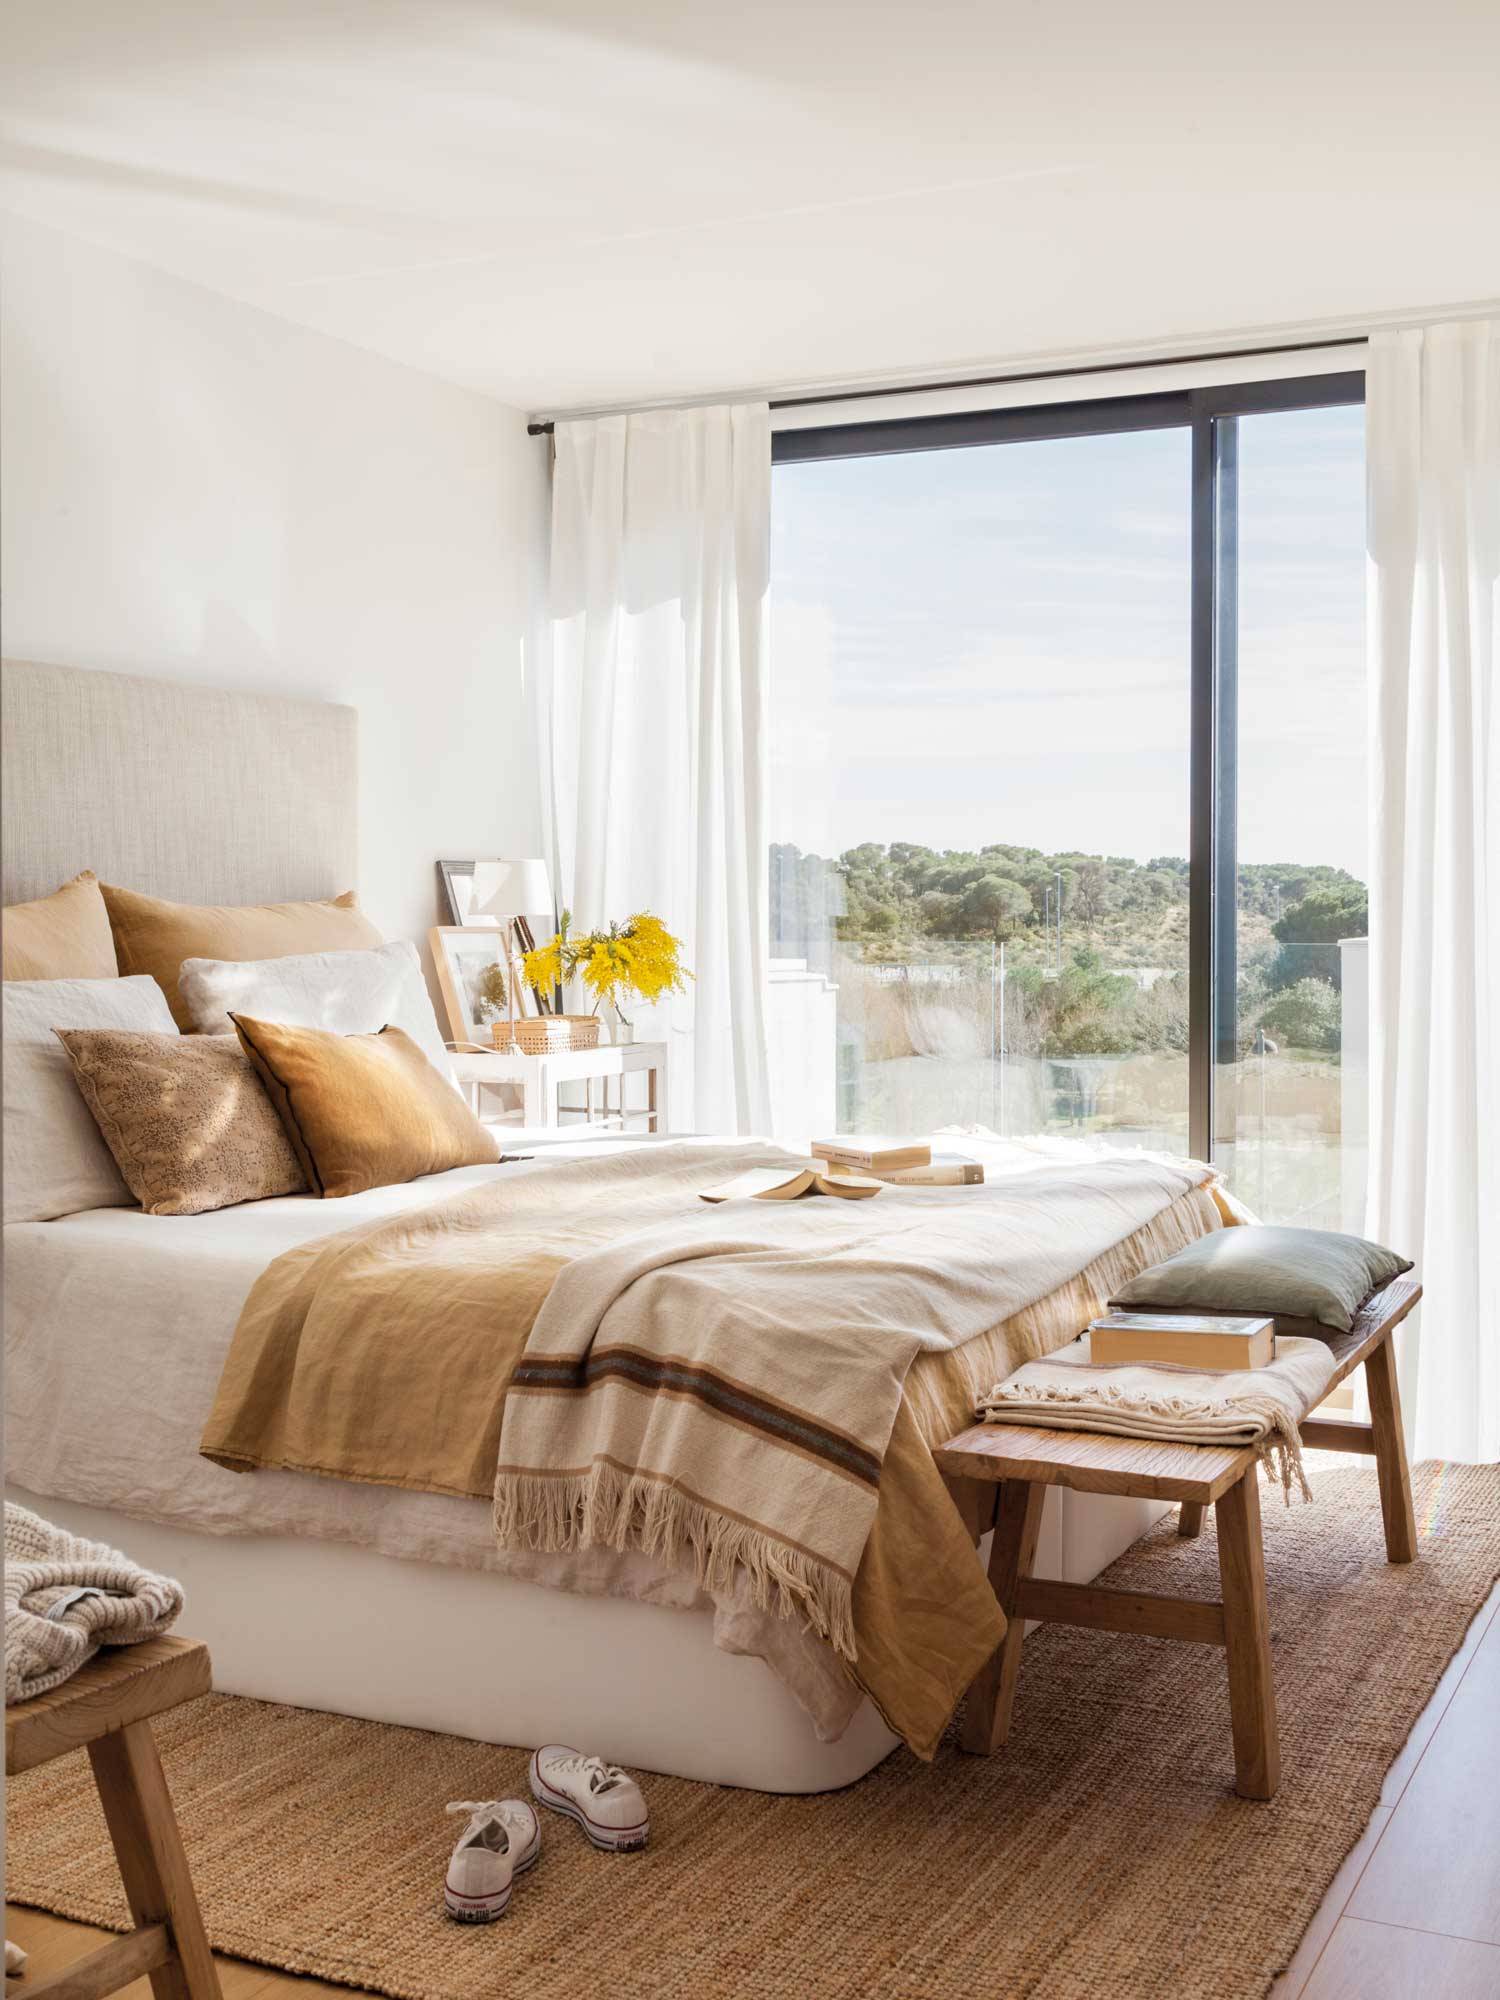 Dormitorio decorado en tonos tierra con un banco de madera a los pies de la cama y un gran ventanal 00538443